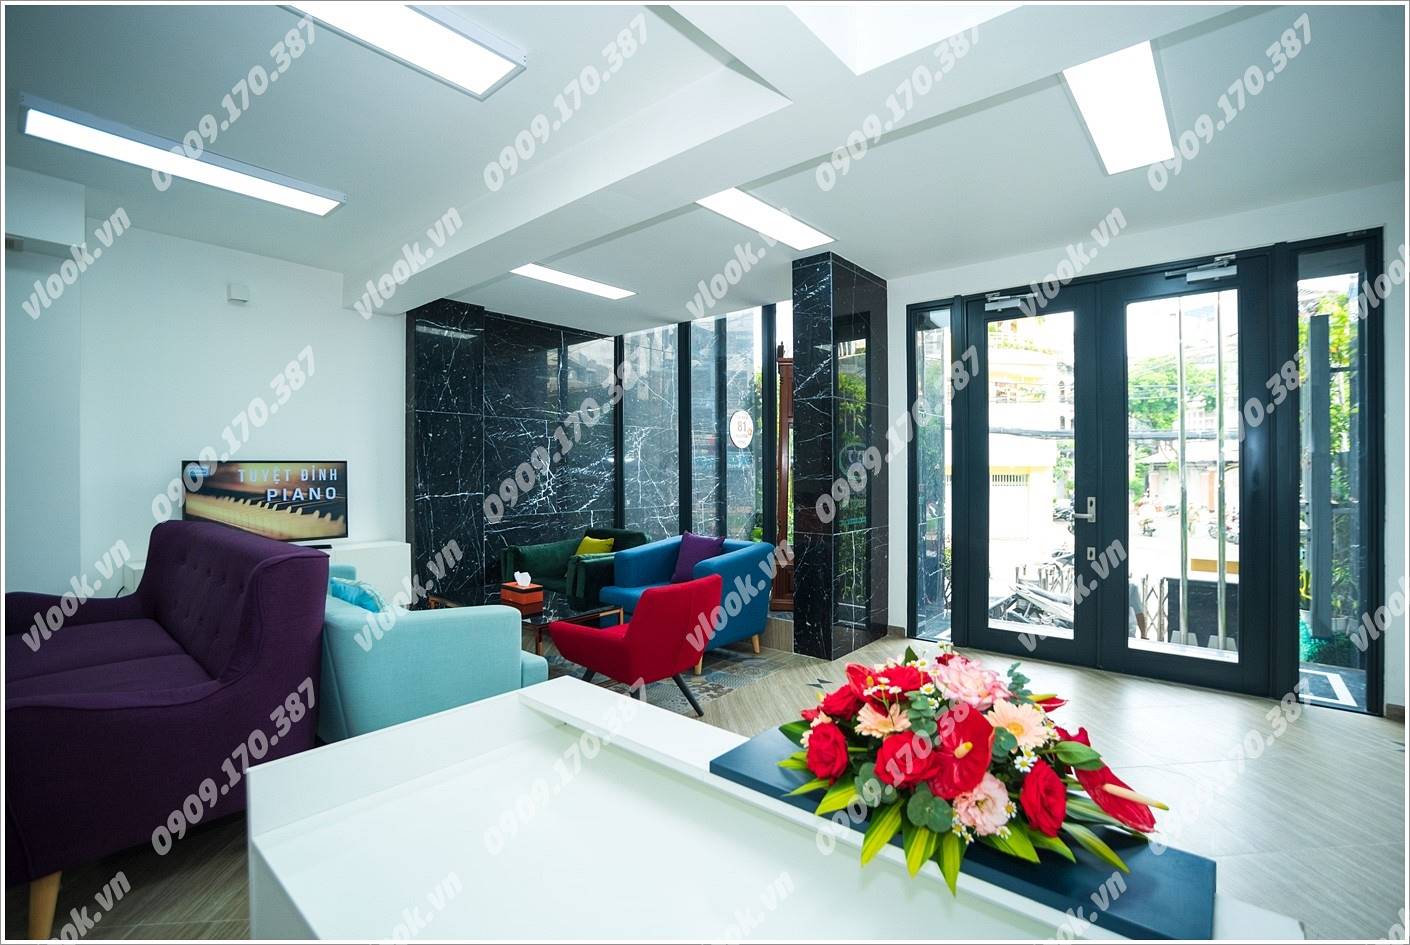 Cao ốc văn phòng cho thuê Tòa nhà 81 Nguyên Hồng, Quận Bình Thạnh, TPHCM - vlook.vn